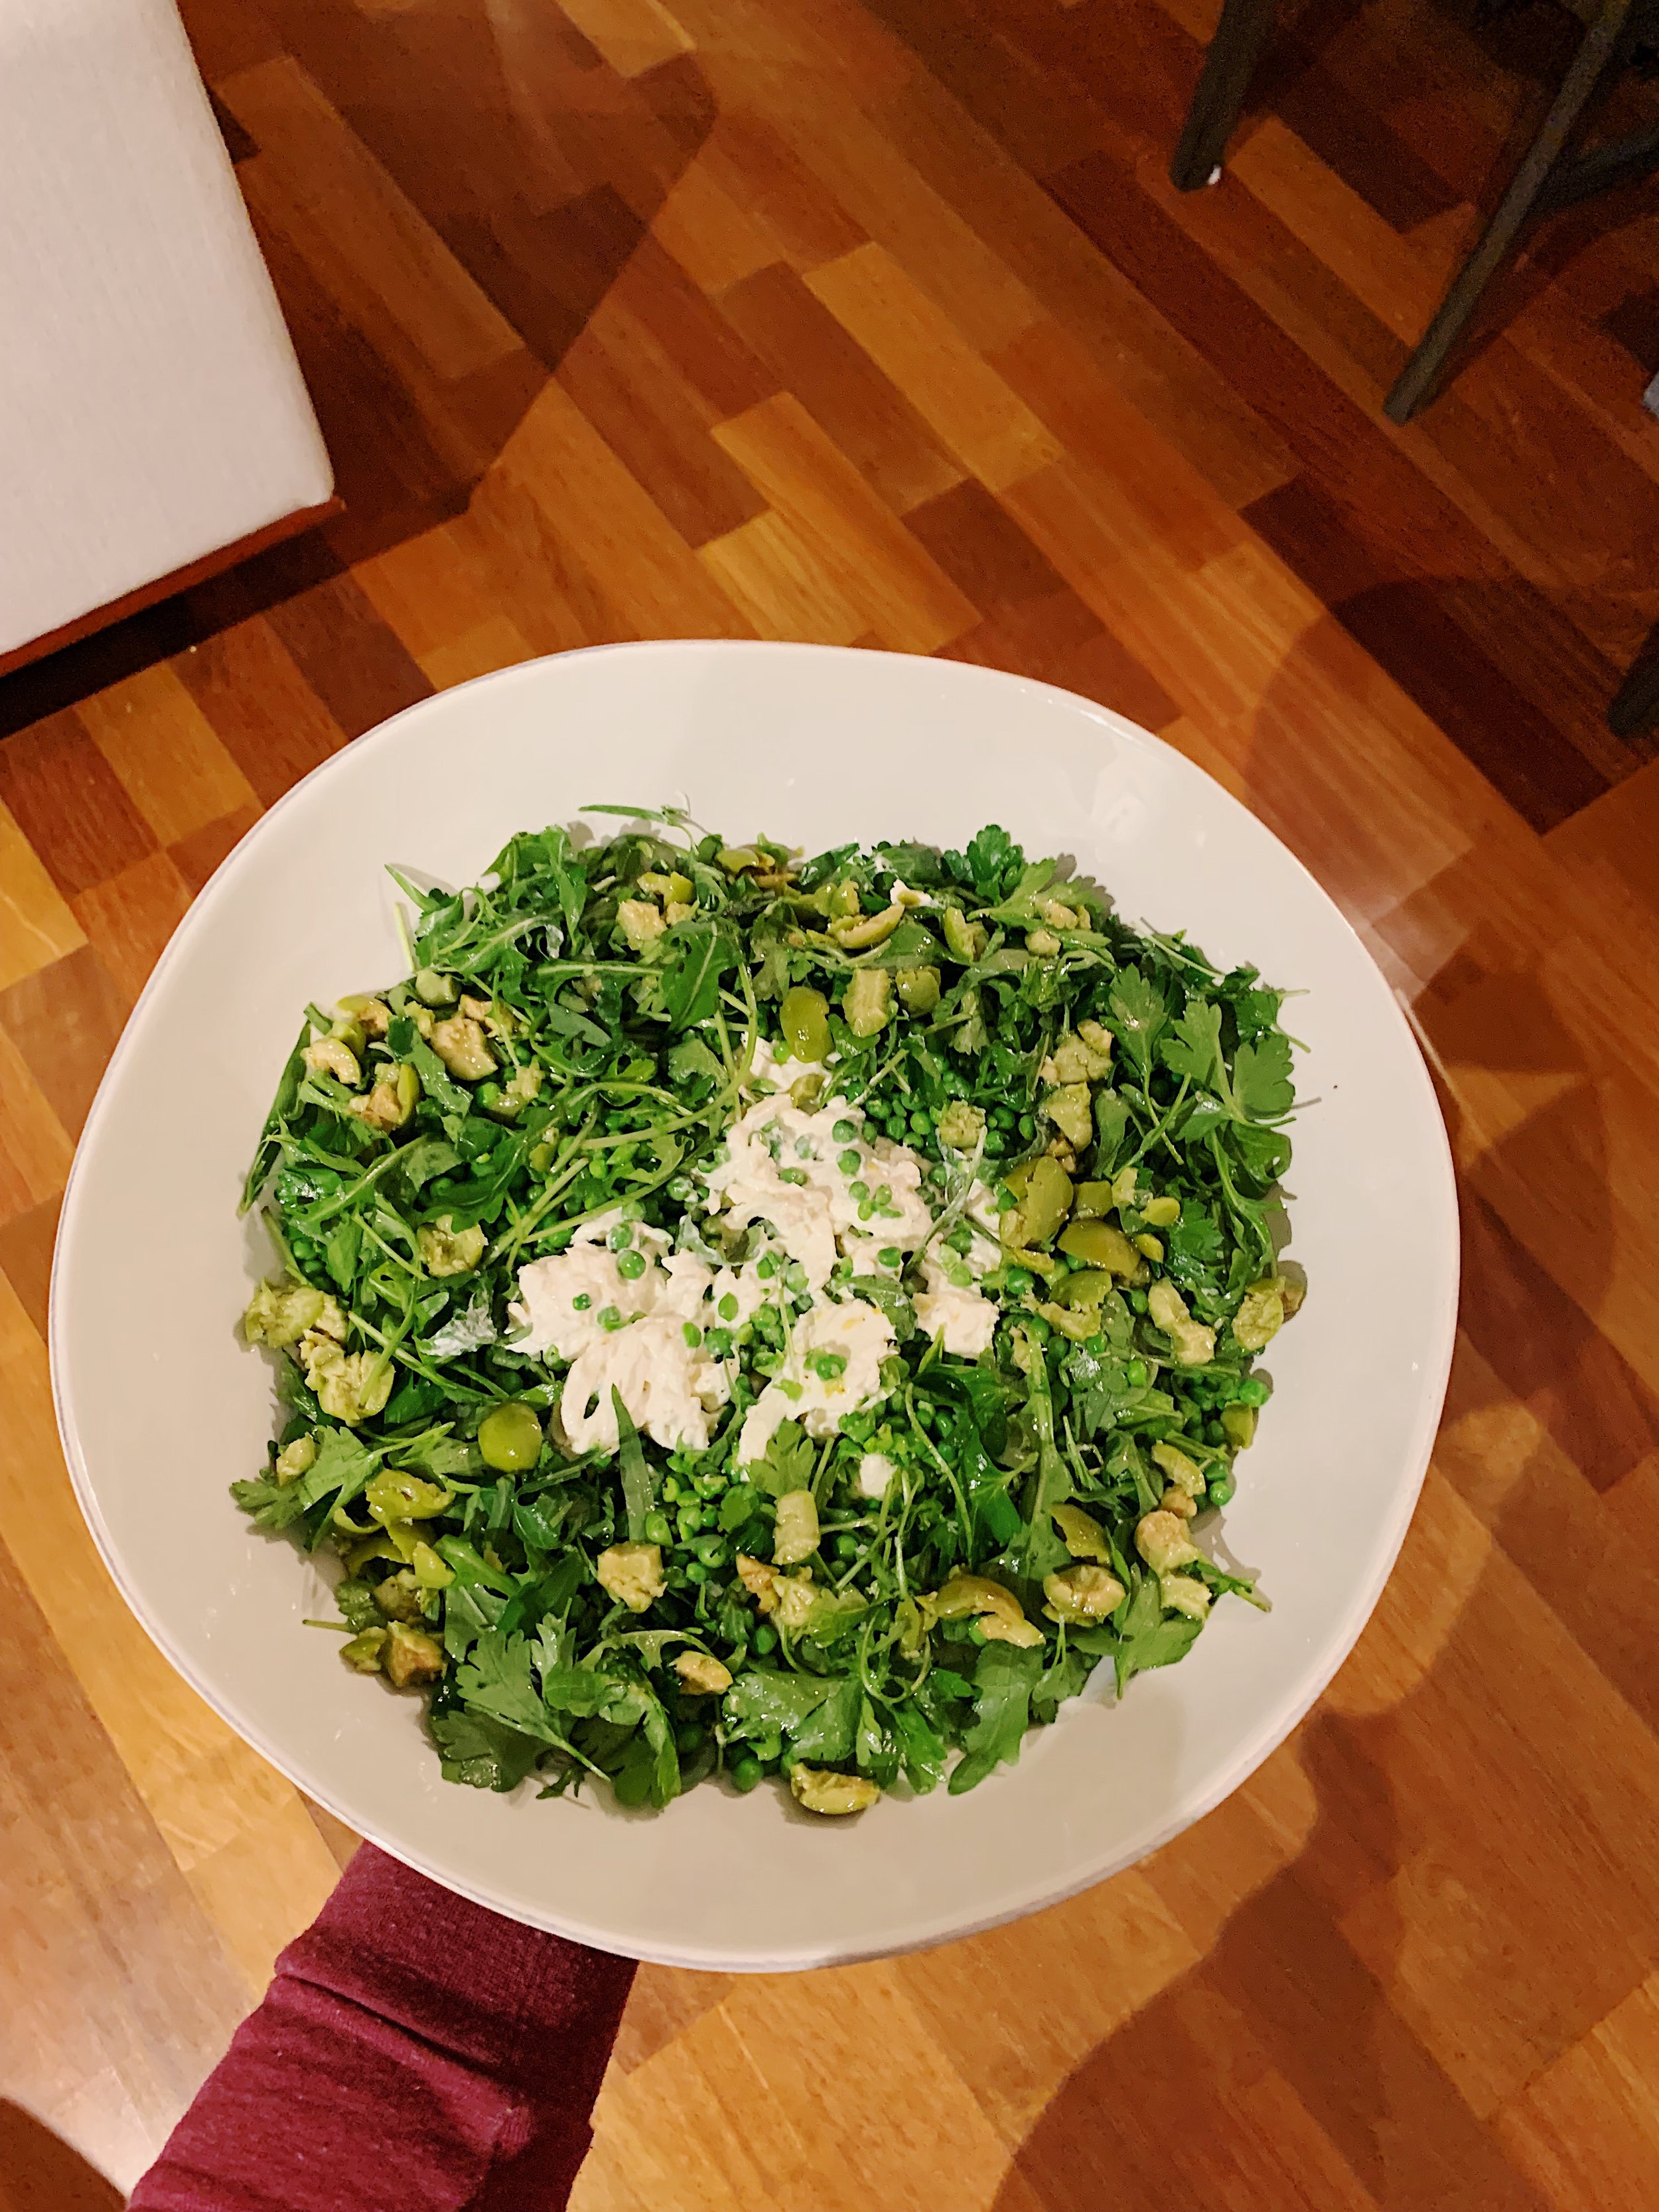 crushed-peas-burrata-salad-olives-alison-roman-1.jpg